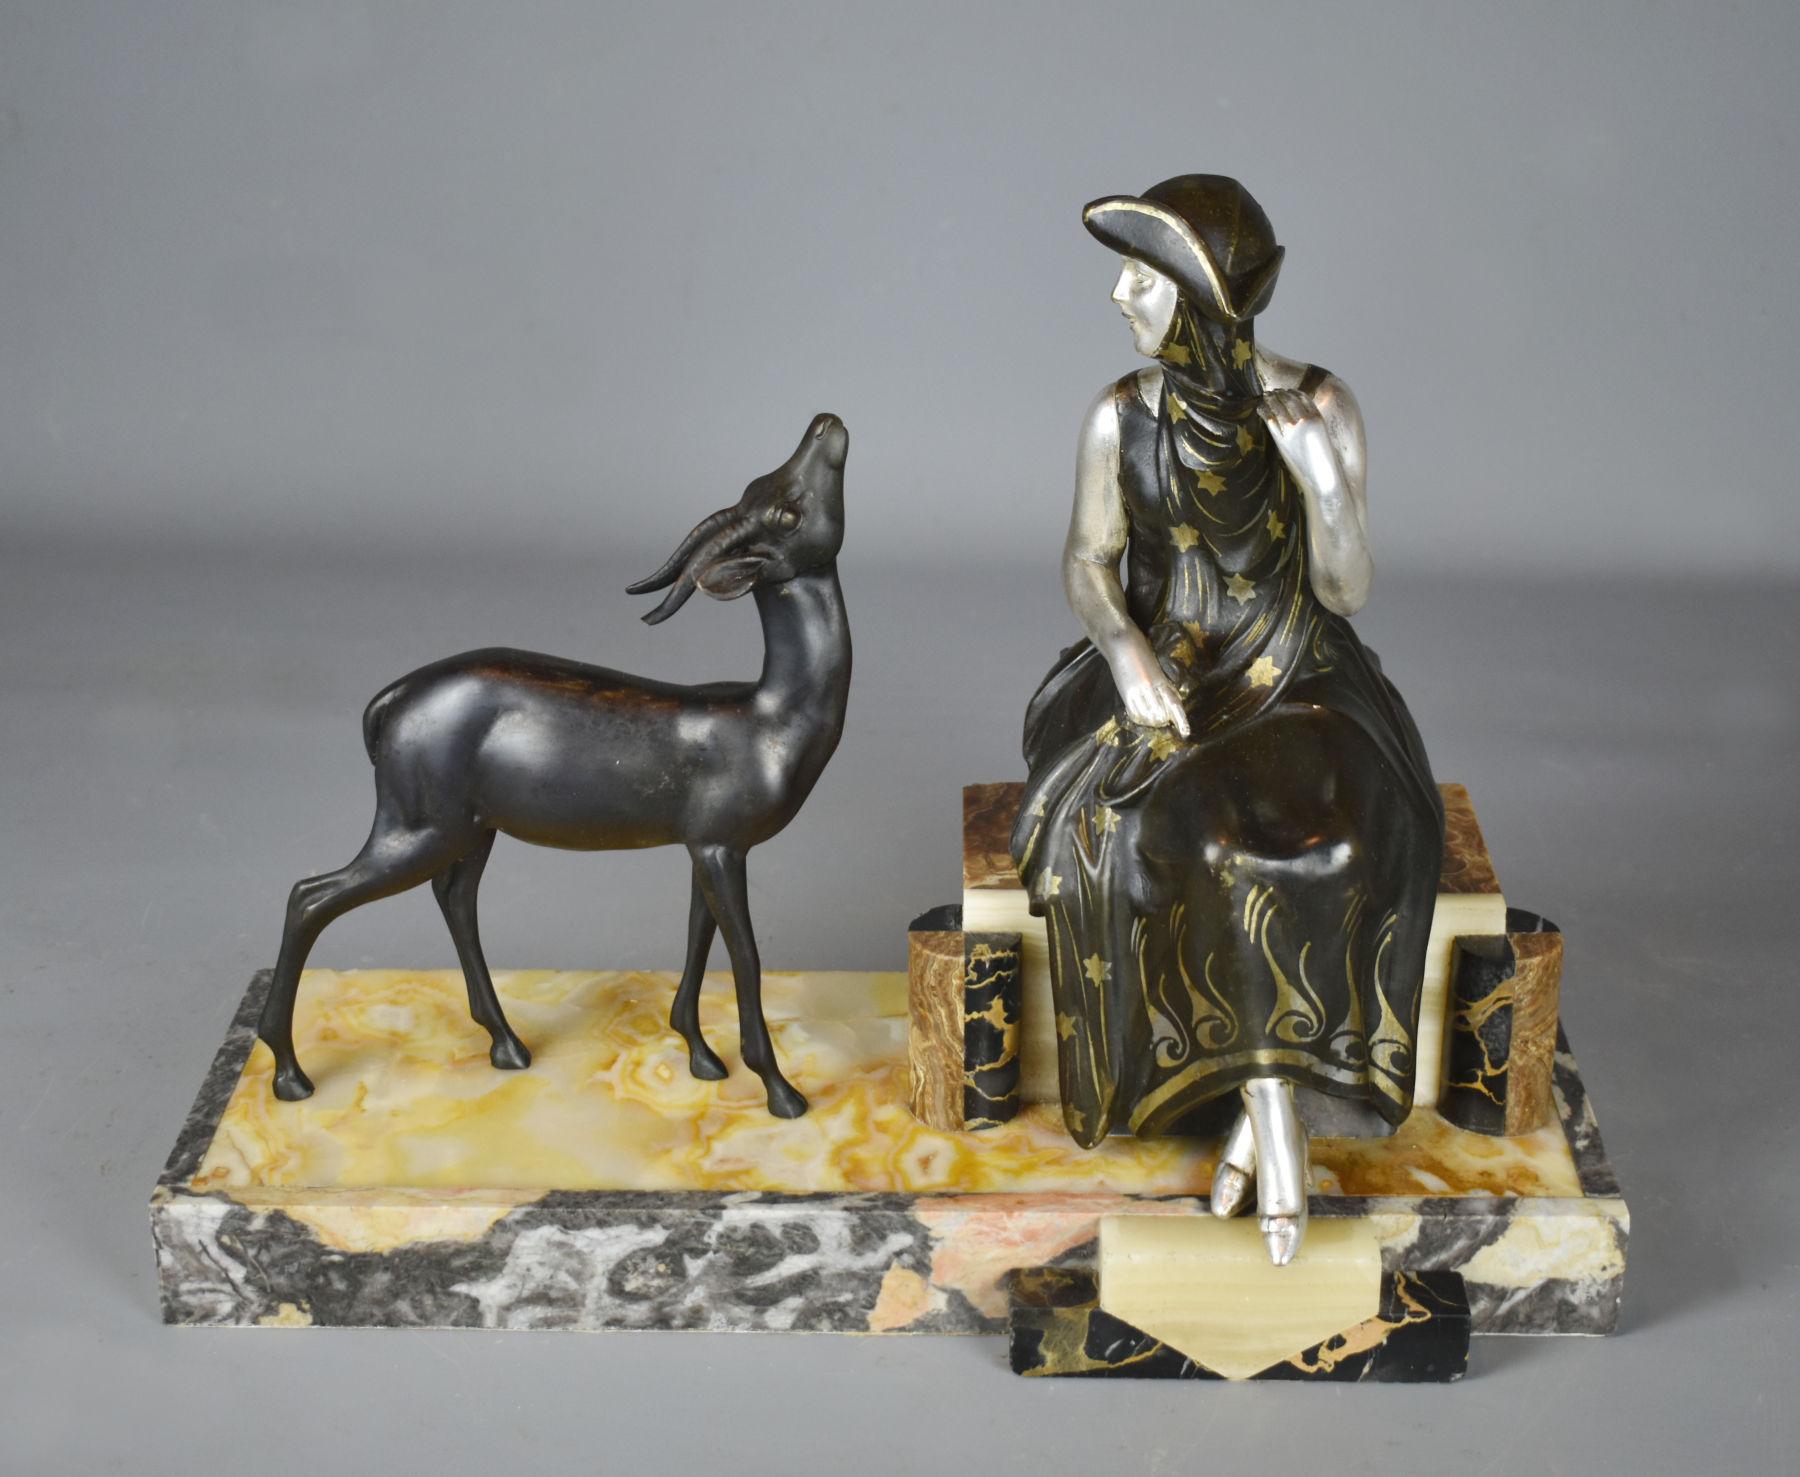 Sculpture française Art déco représentant une dame et une gazelle, 1930

Un charmant groupe figuratif original représentant une jeune femme et une gazelle. Elles sont toutes deux coulées dans de la fonte et peintes à froid. La dame est en argent